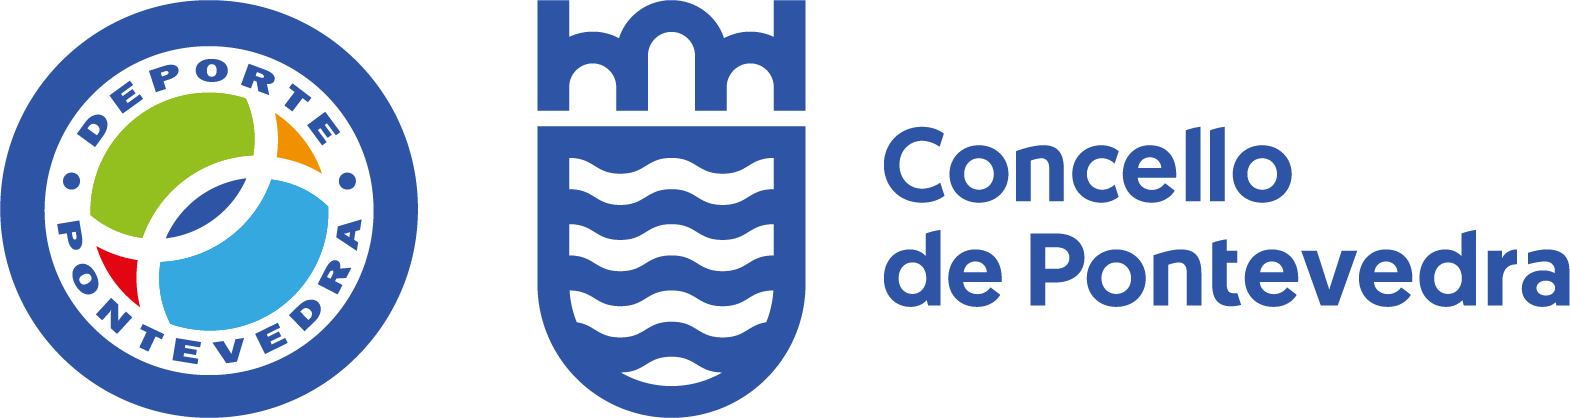 Logotipo Concello Pontevedra e Deportes